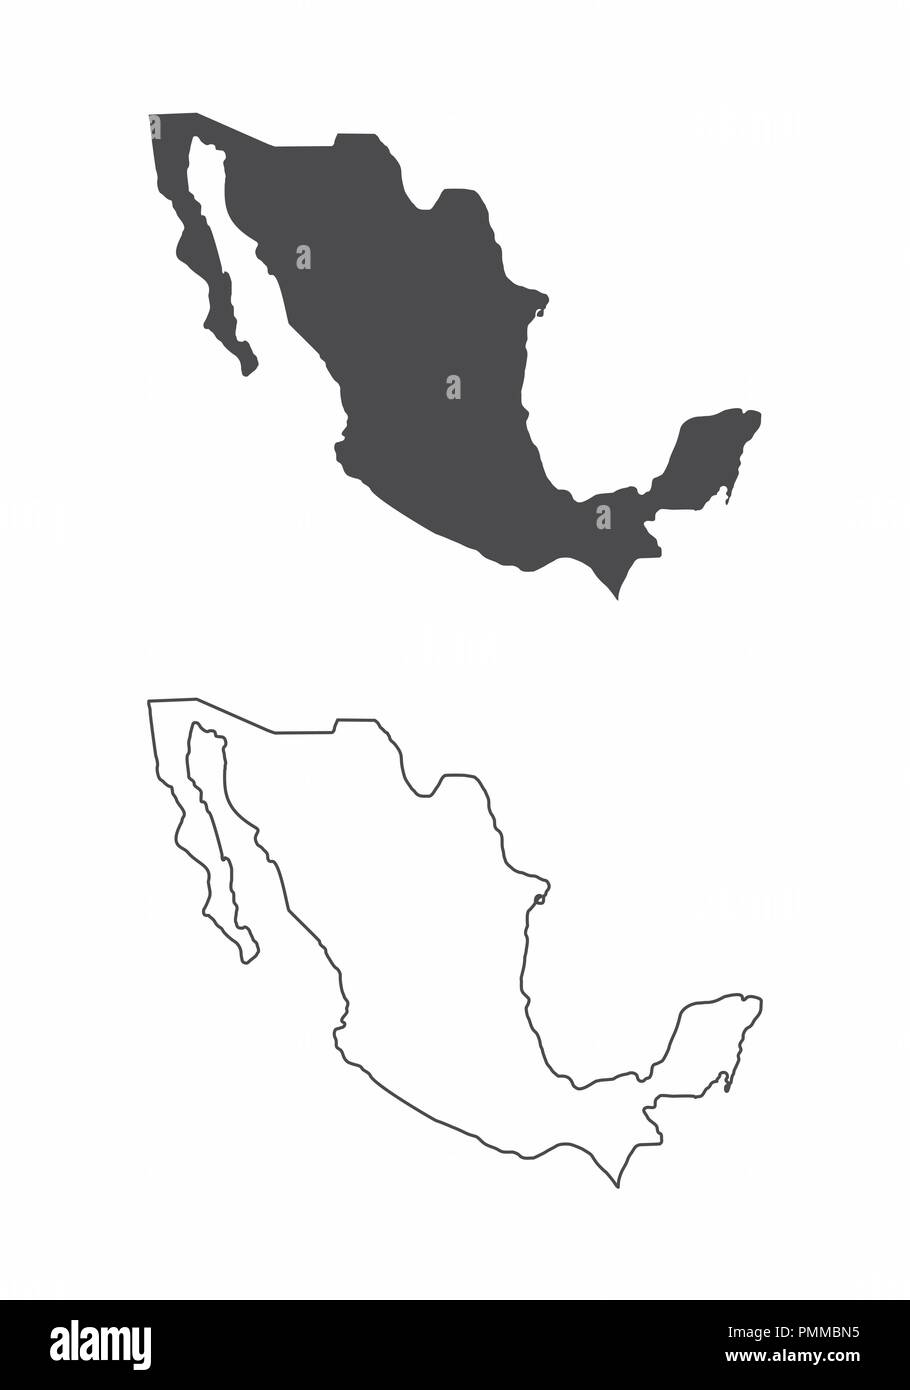 Mappe semplificata del Messico. In bianco e nero dei contorni. Illustrazione Vettoriale